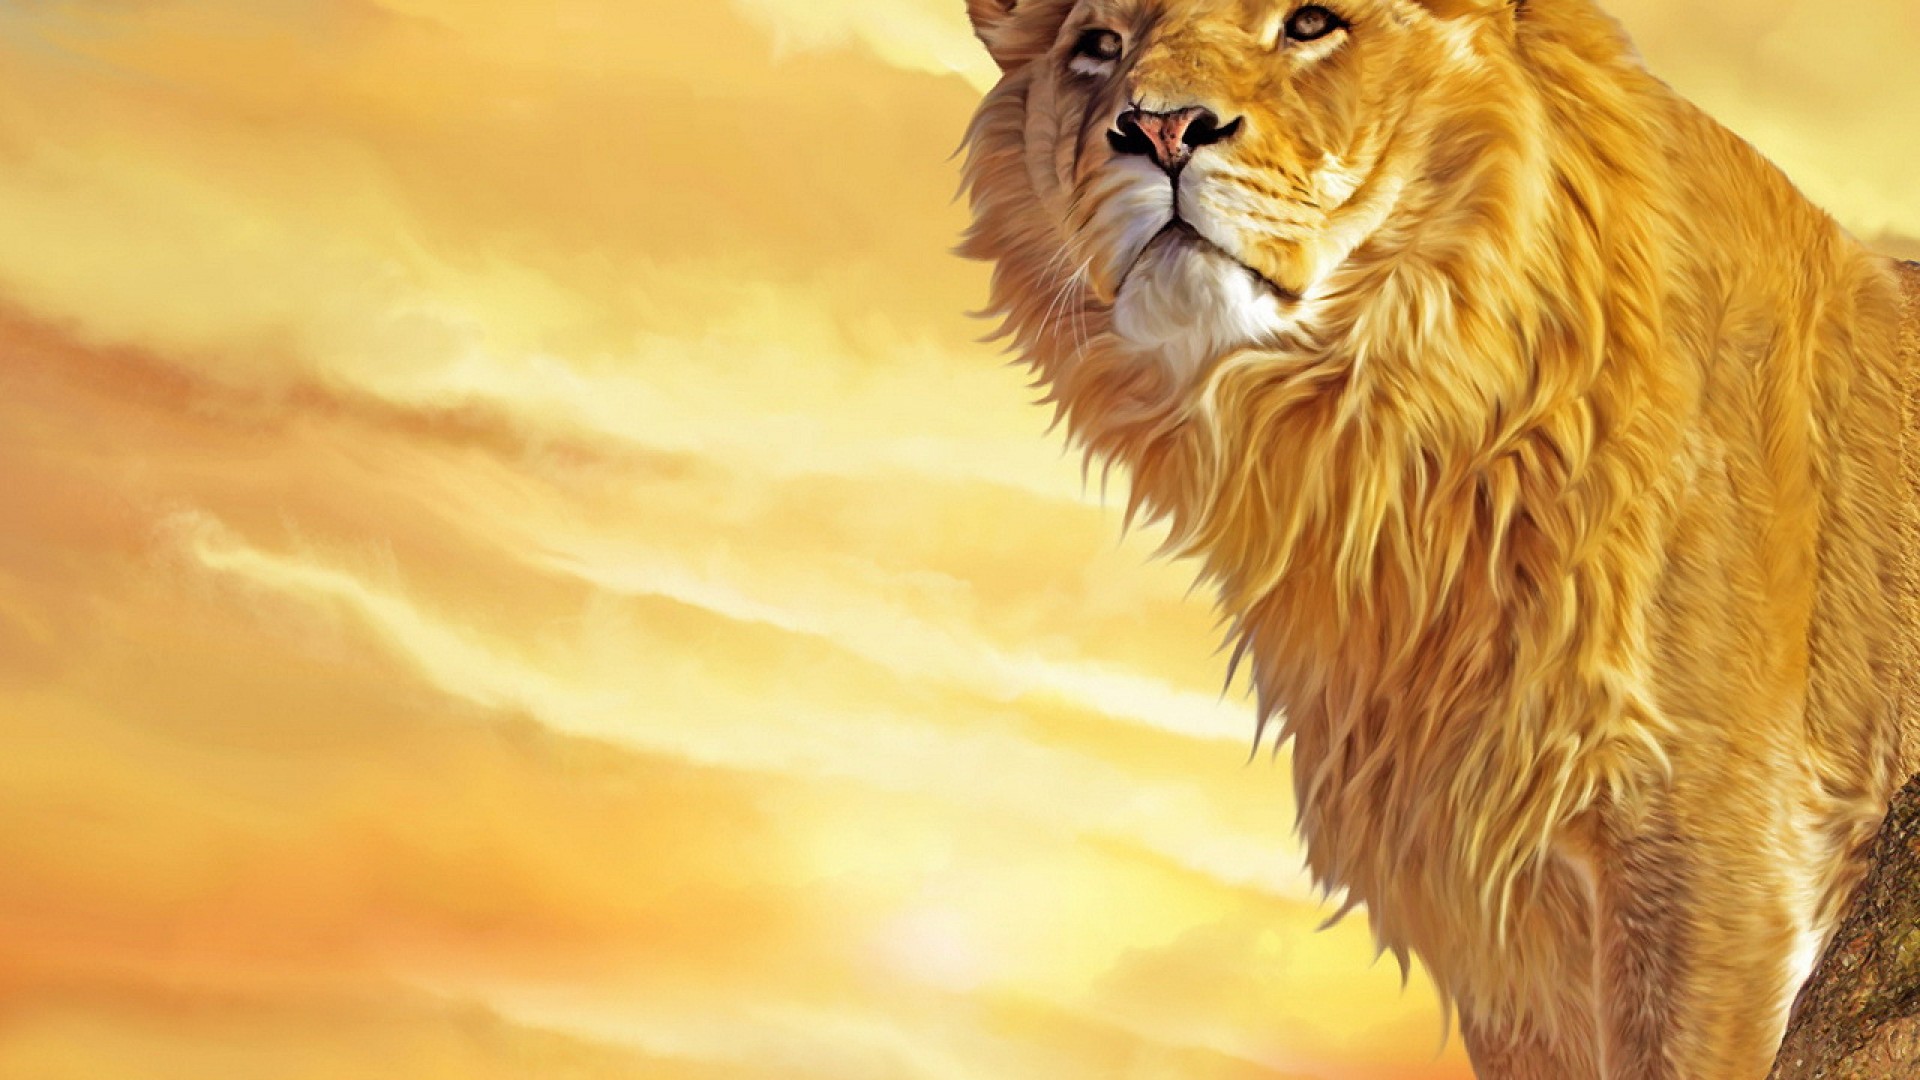 Black Lion (NewLionz) iPhone/Android wallpaper | Leão papel de parede,  Fotos de leão, Fotos de animais selvagens